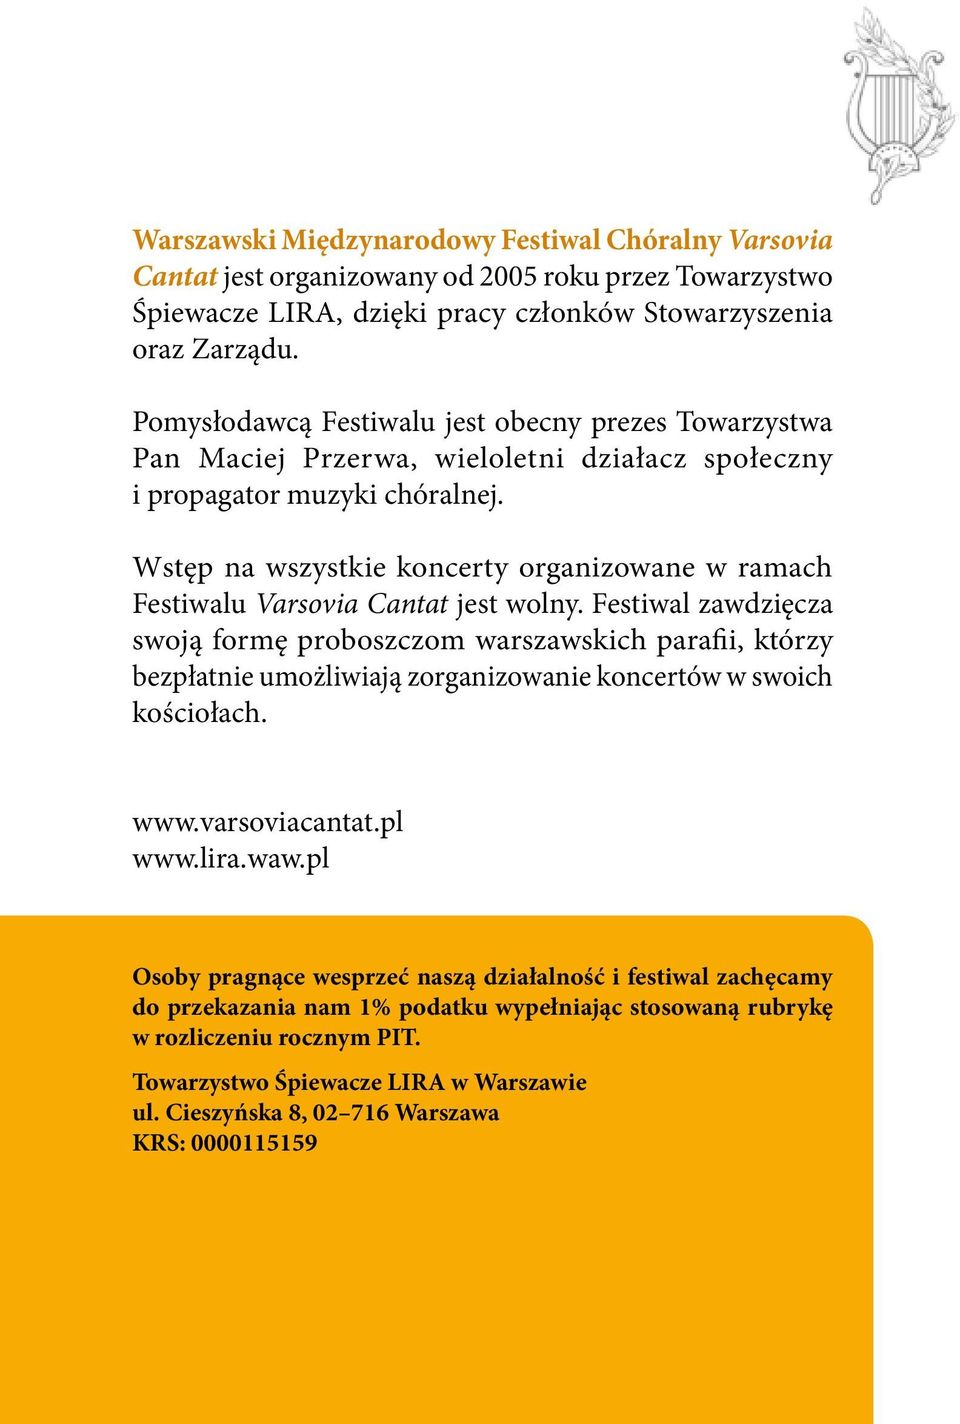 Wstęp na wszystkie koncerty organizowane w ramach Festiwalu Varsovia Cantat jest wolny.